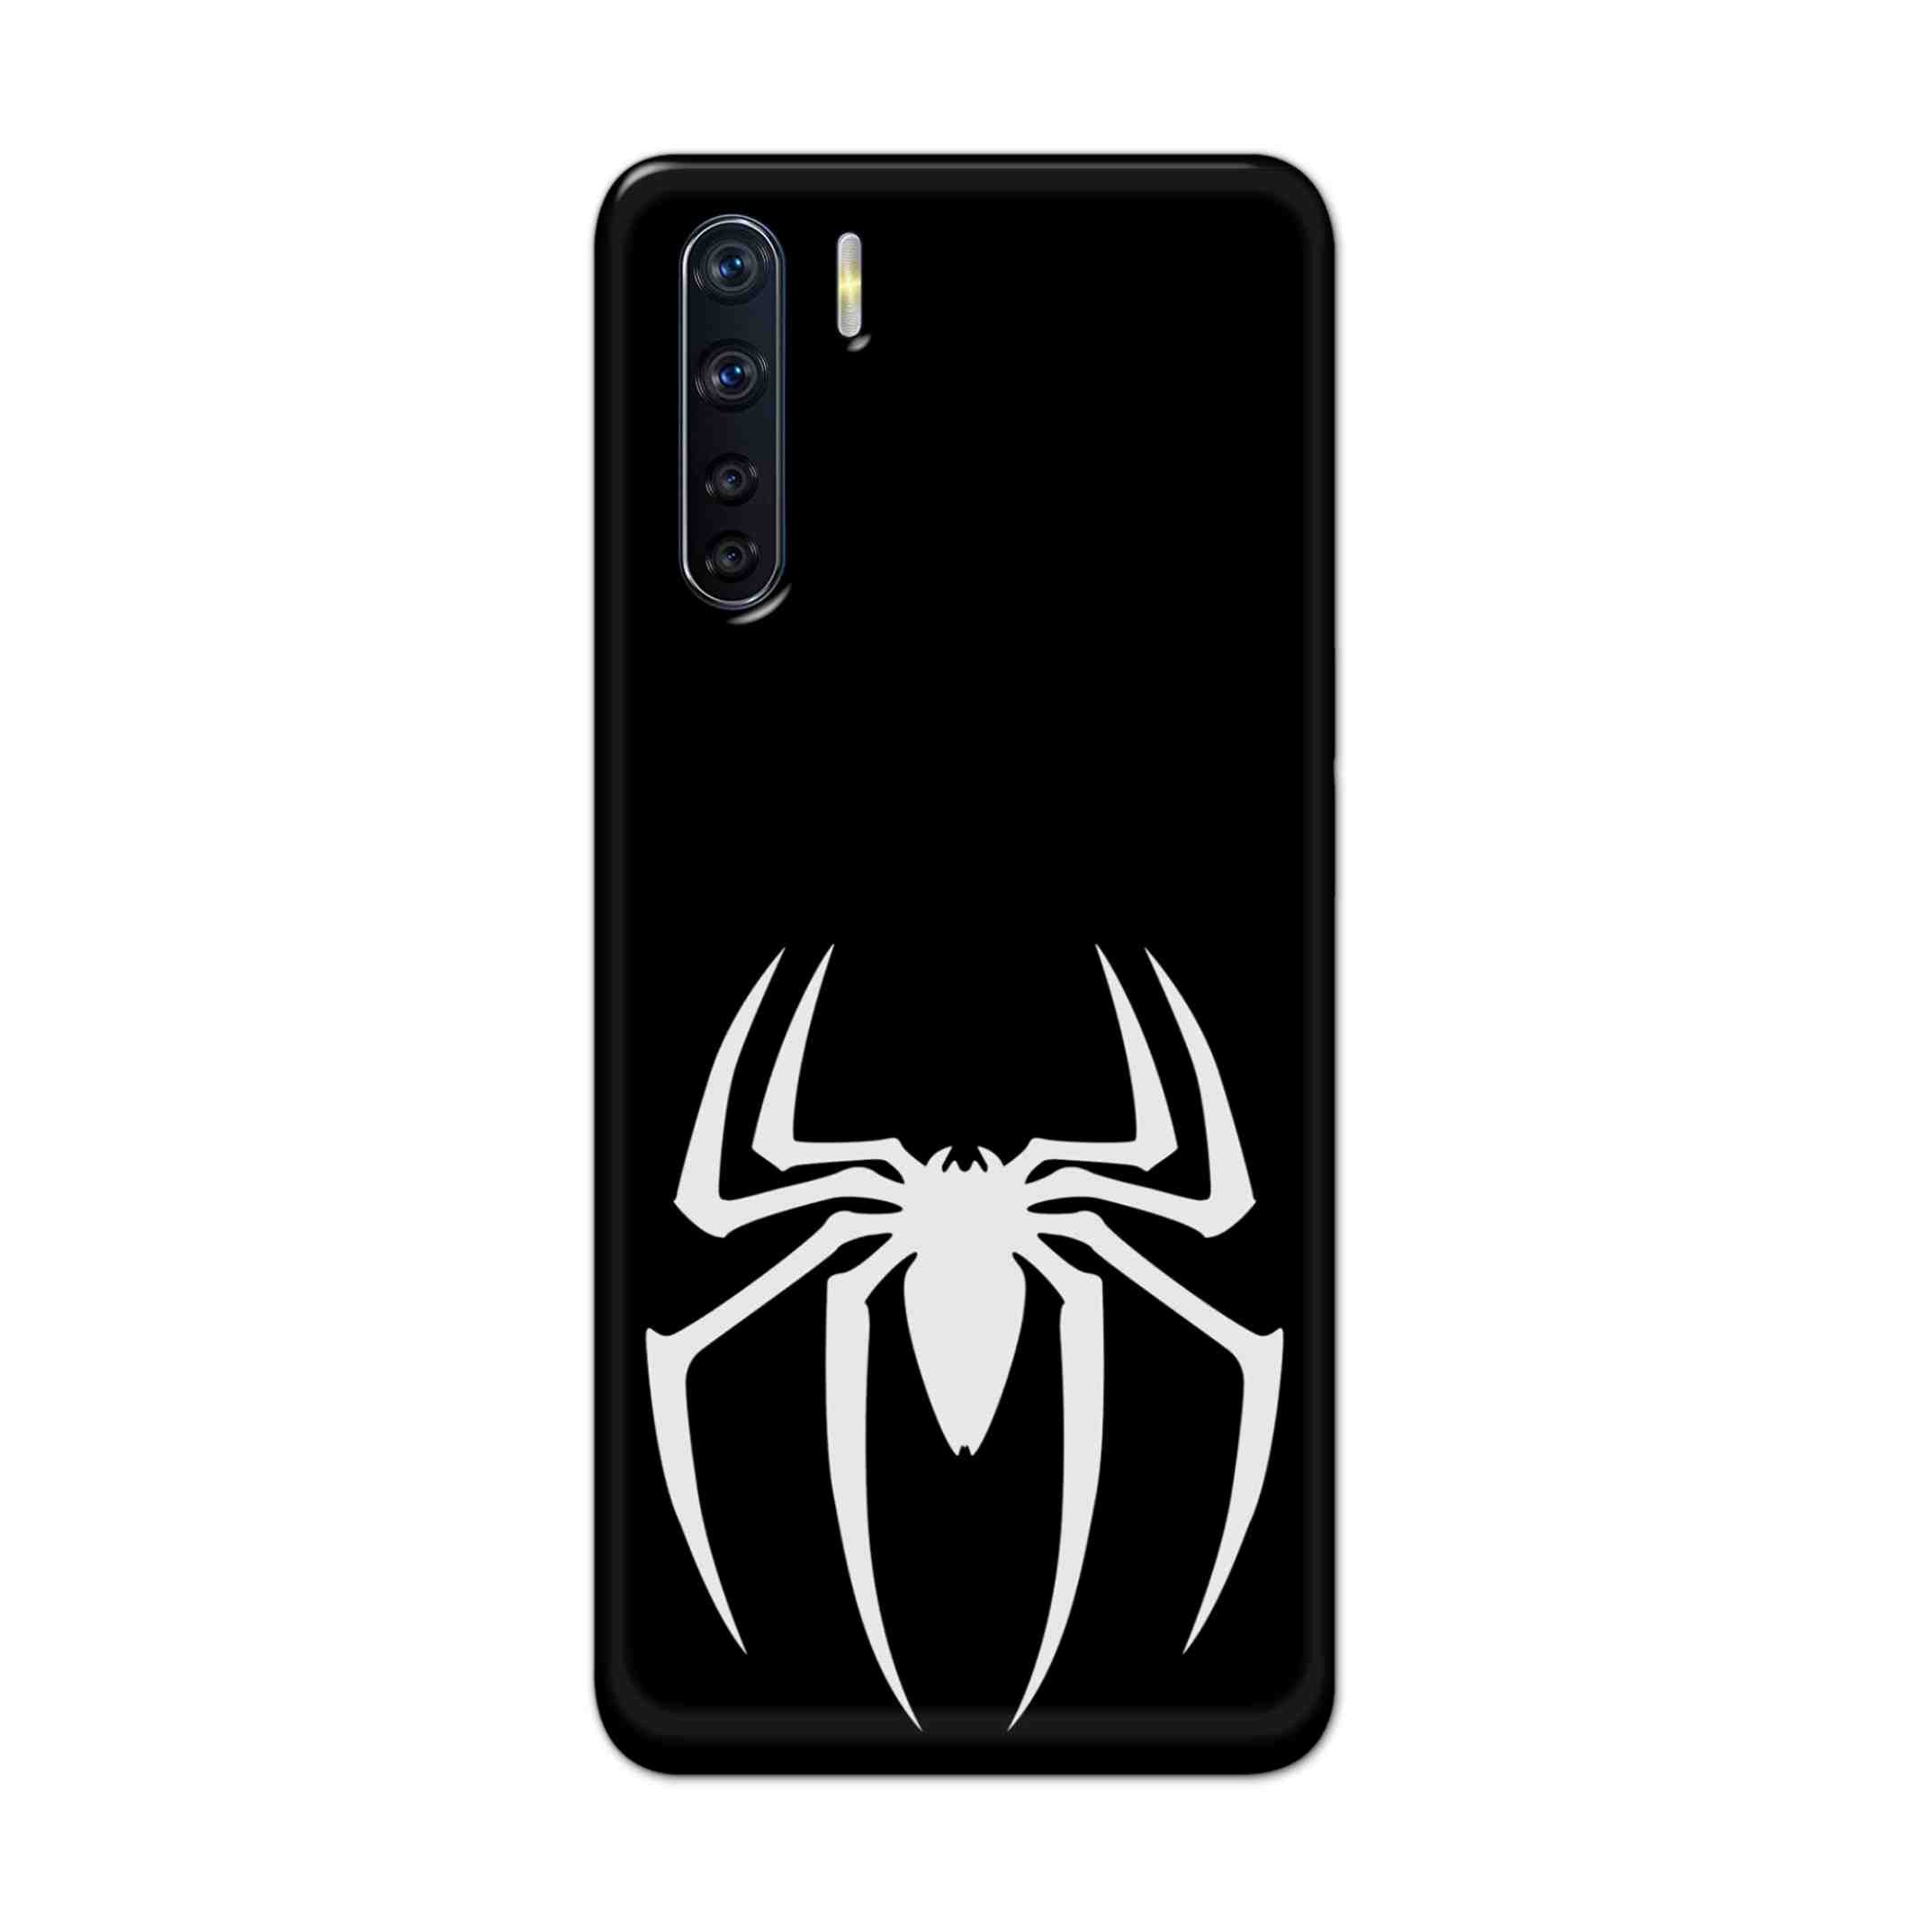 Buy Black Spiderman Logo Hard Back Mobile Phone Case Cover For OPPO F15 Online